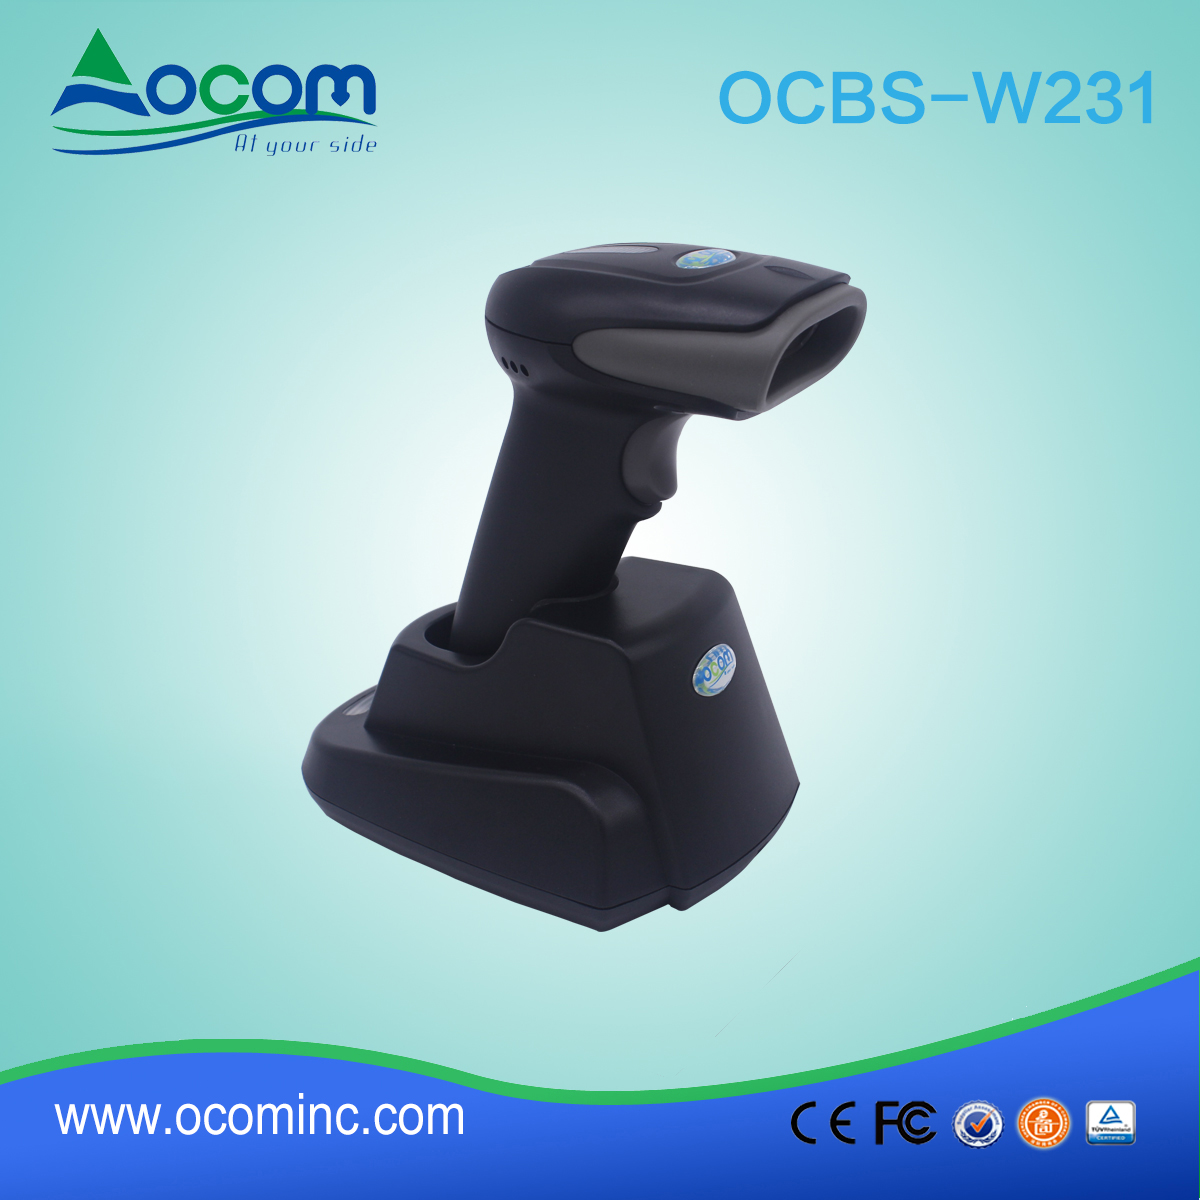 OCBS-W231 draagbare Bluetooth USB Barcode Scanner voor inventaris